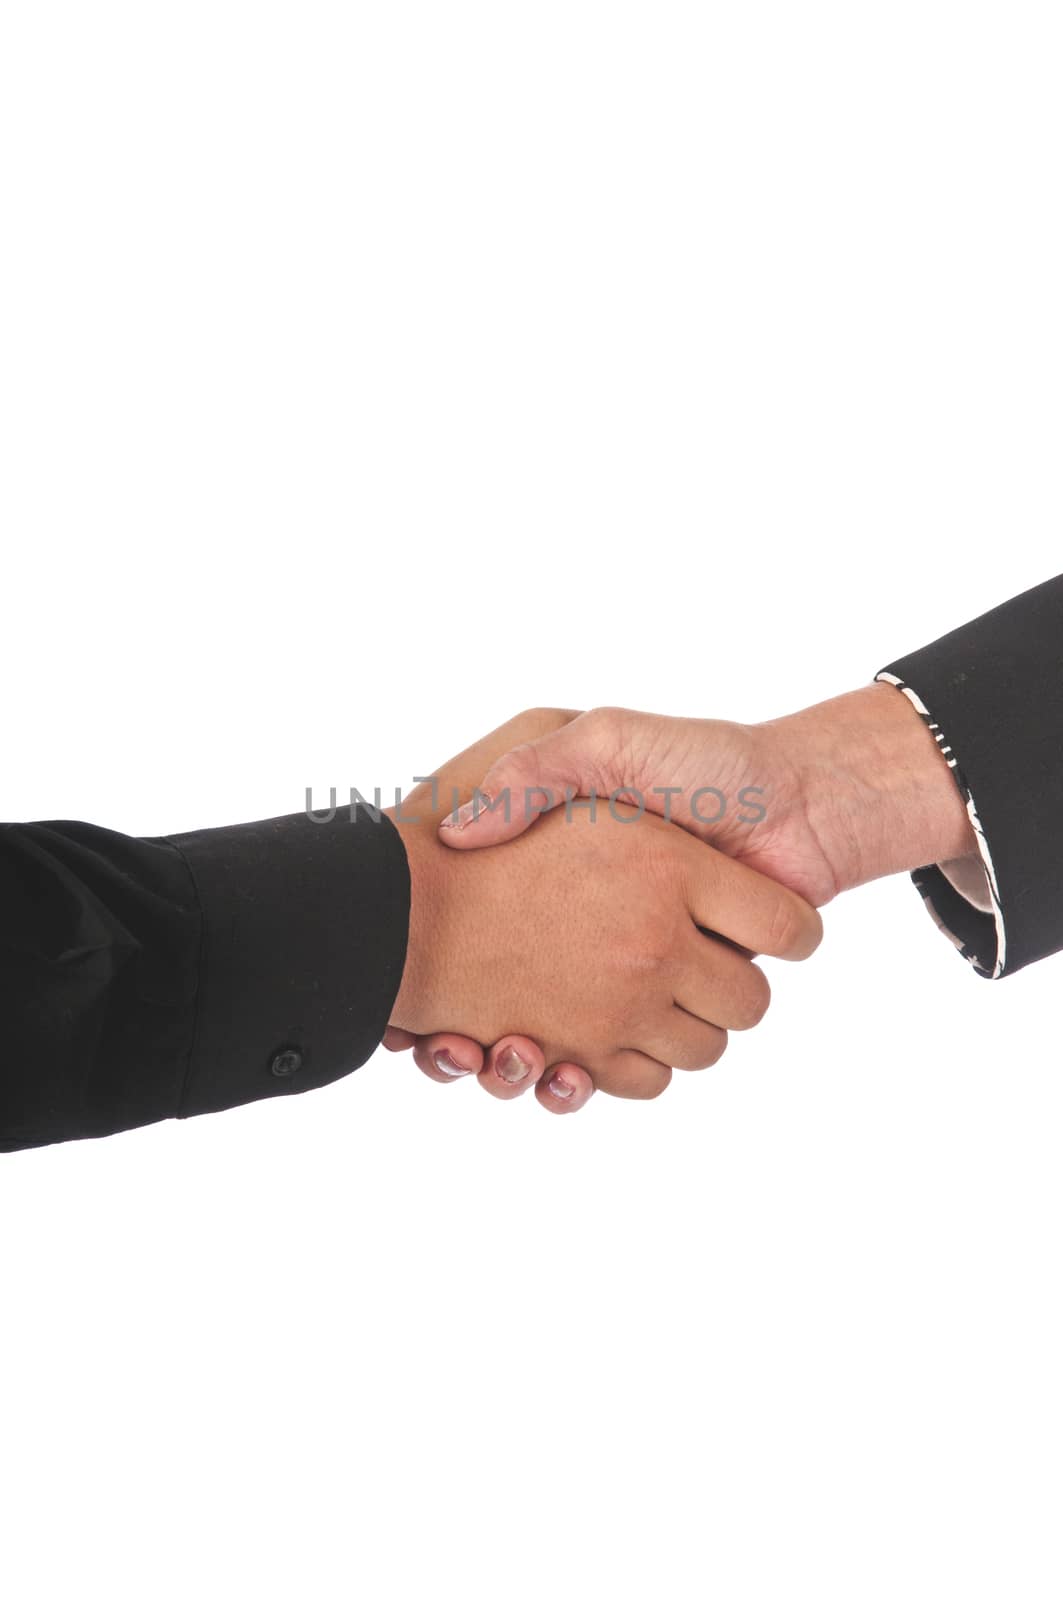 Multi-Racial Handshake by rcarner